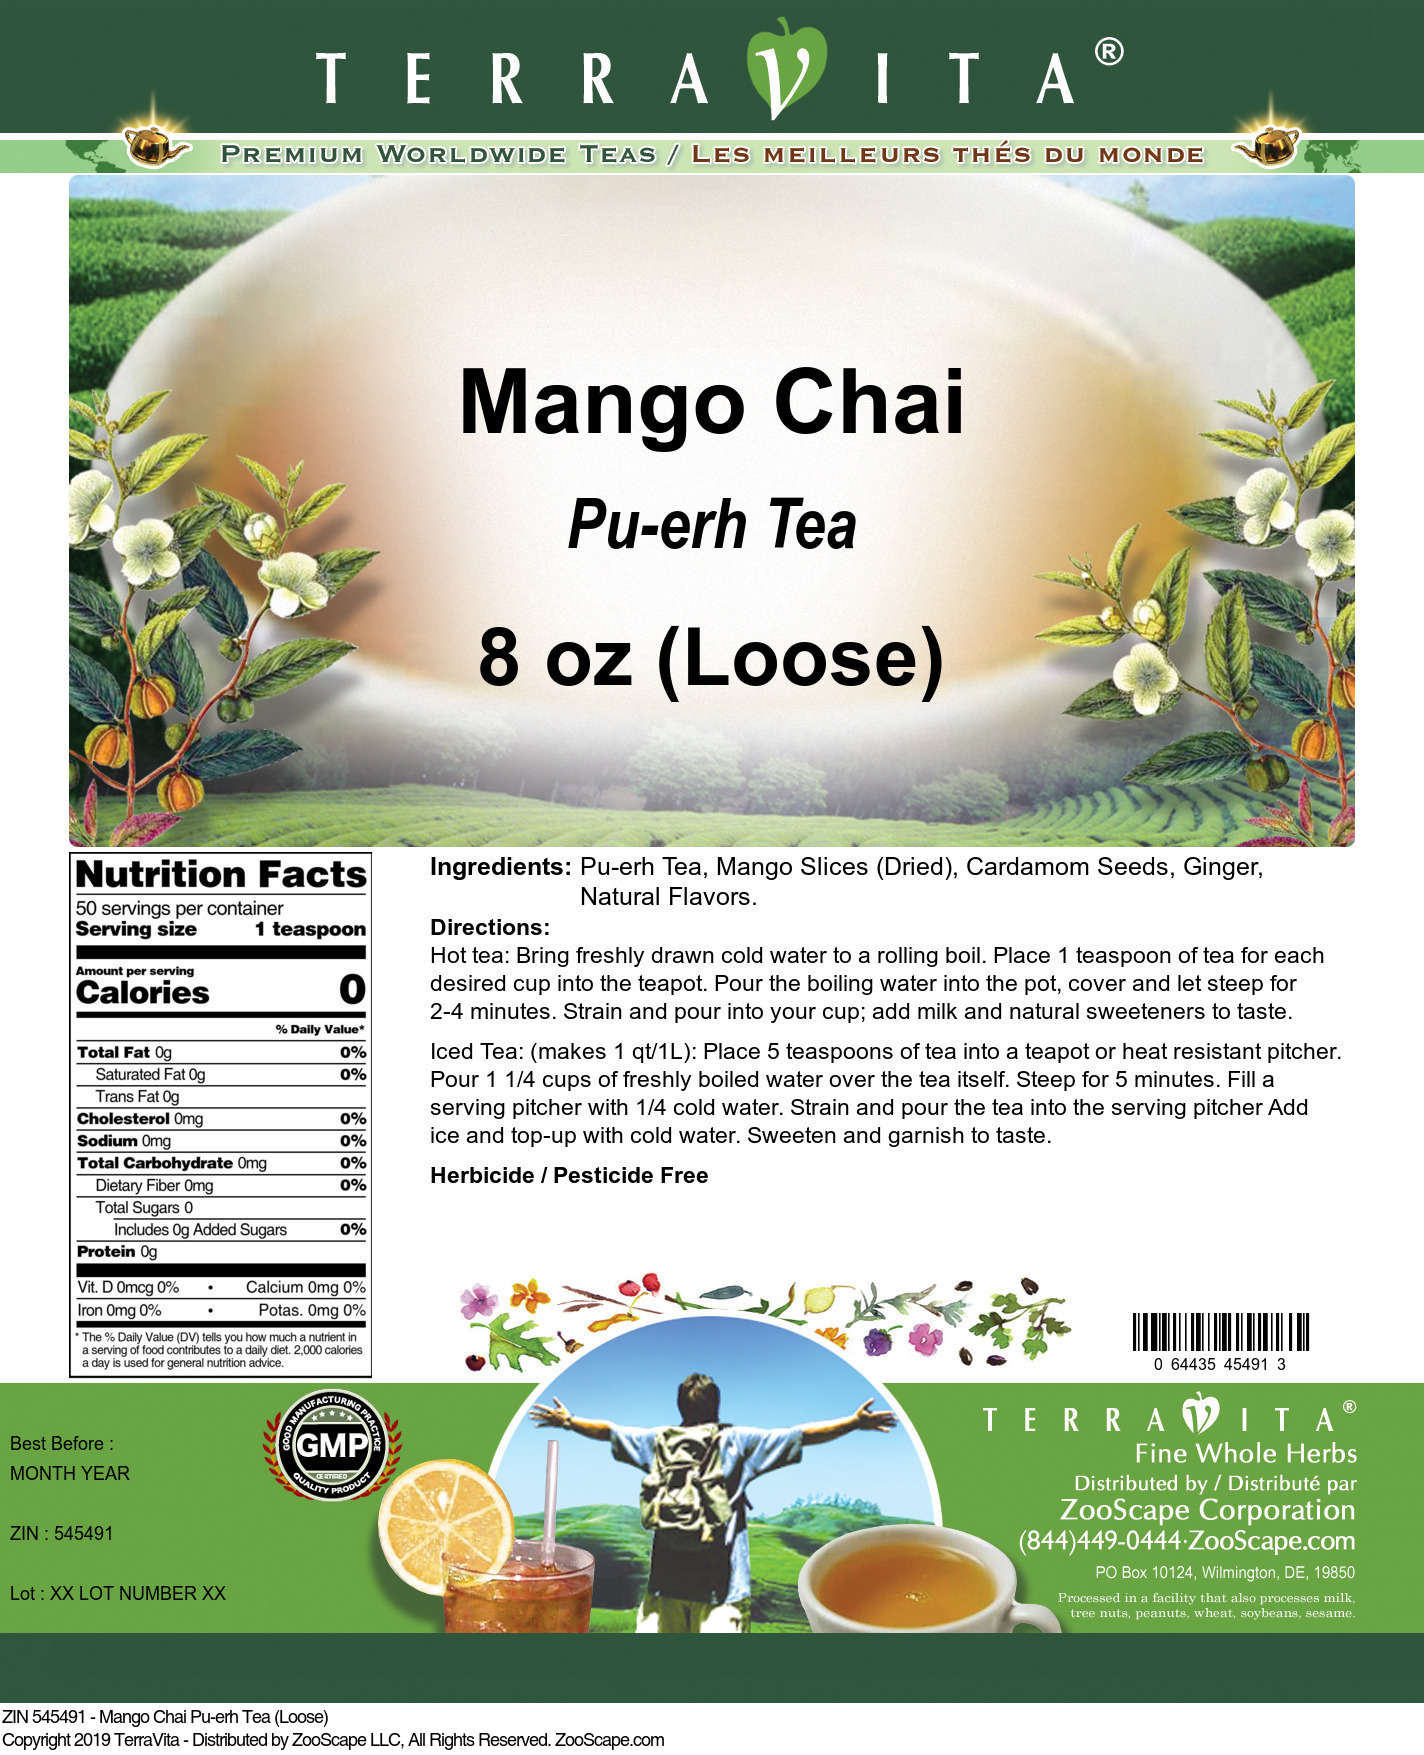 Mango Chai Pu-erh Tea (Loose) - Label